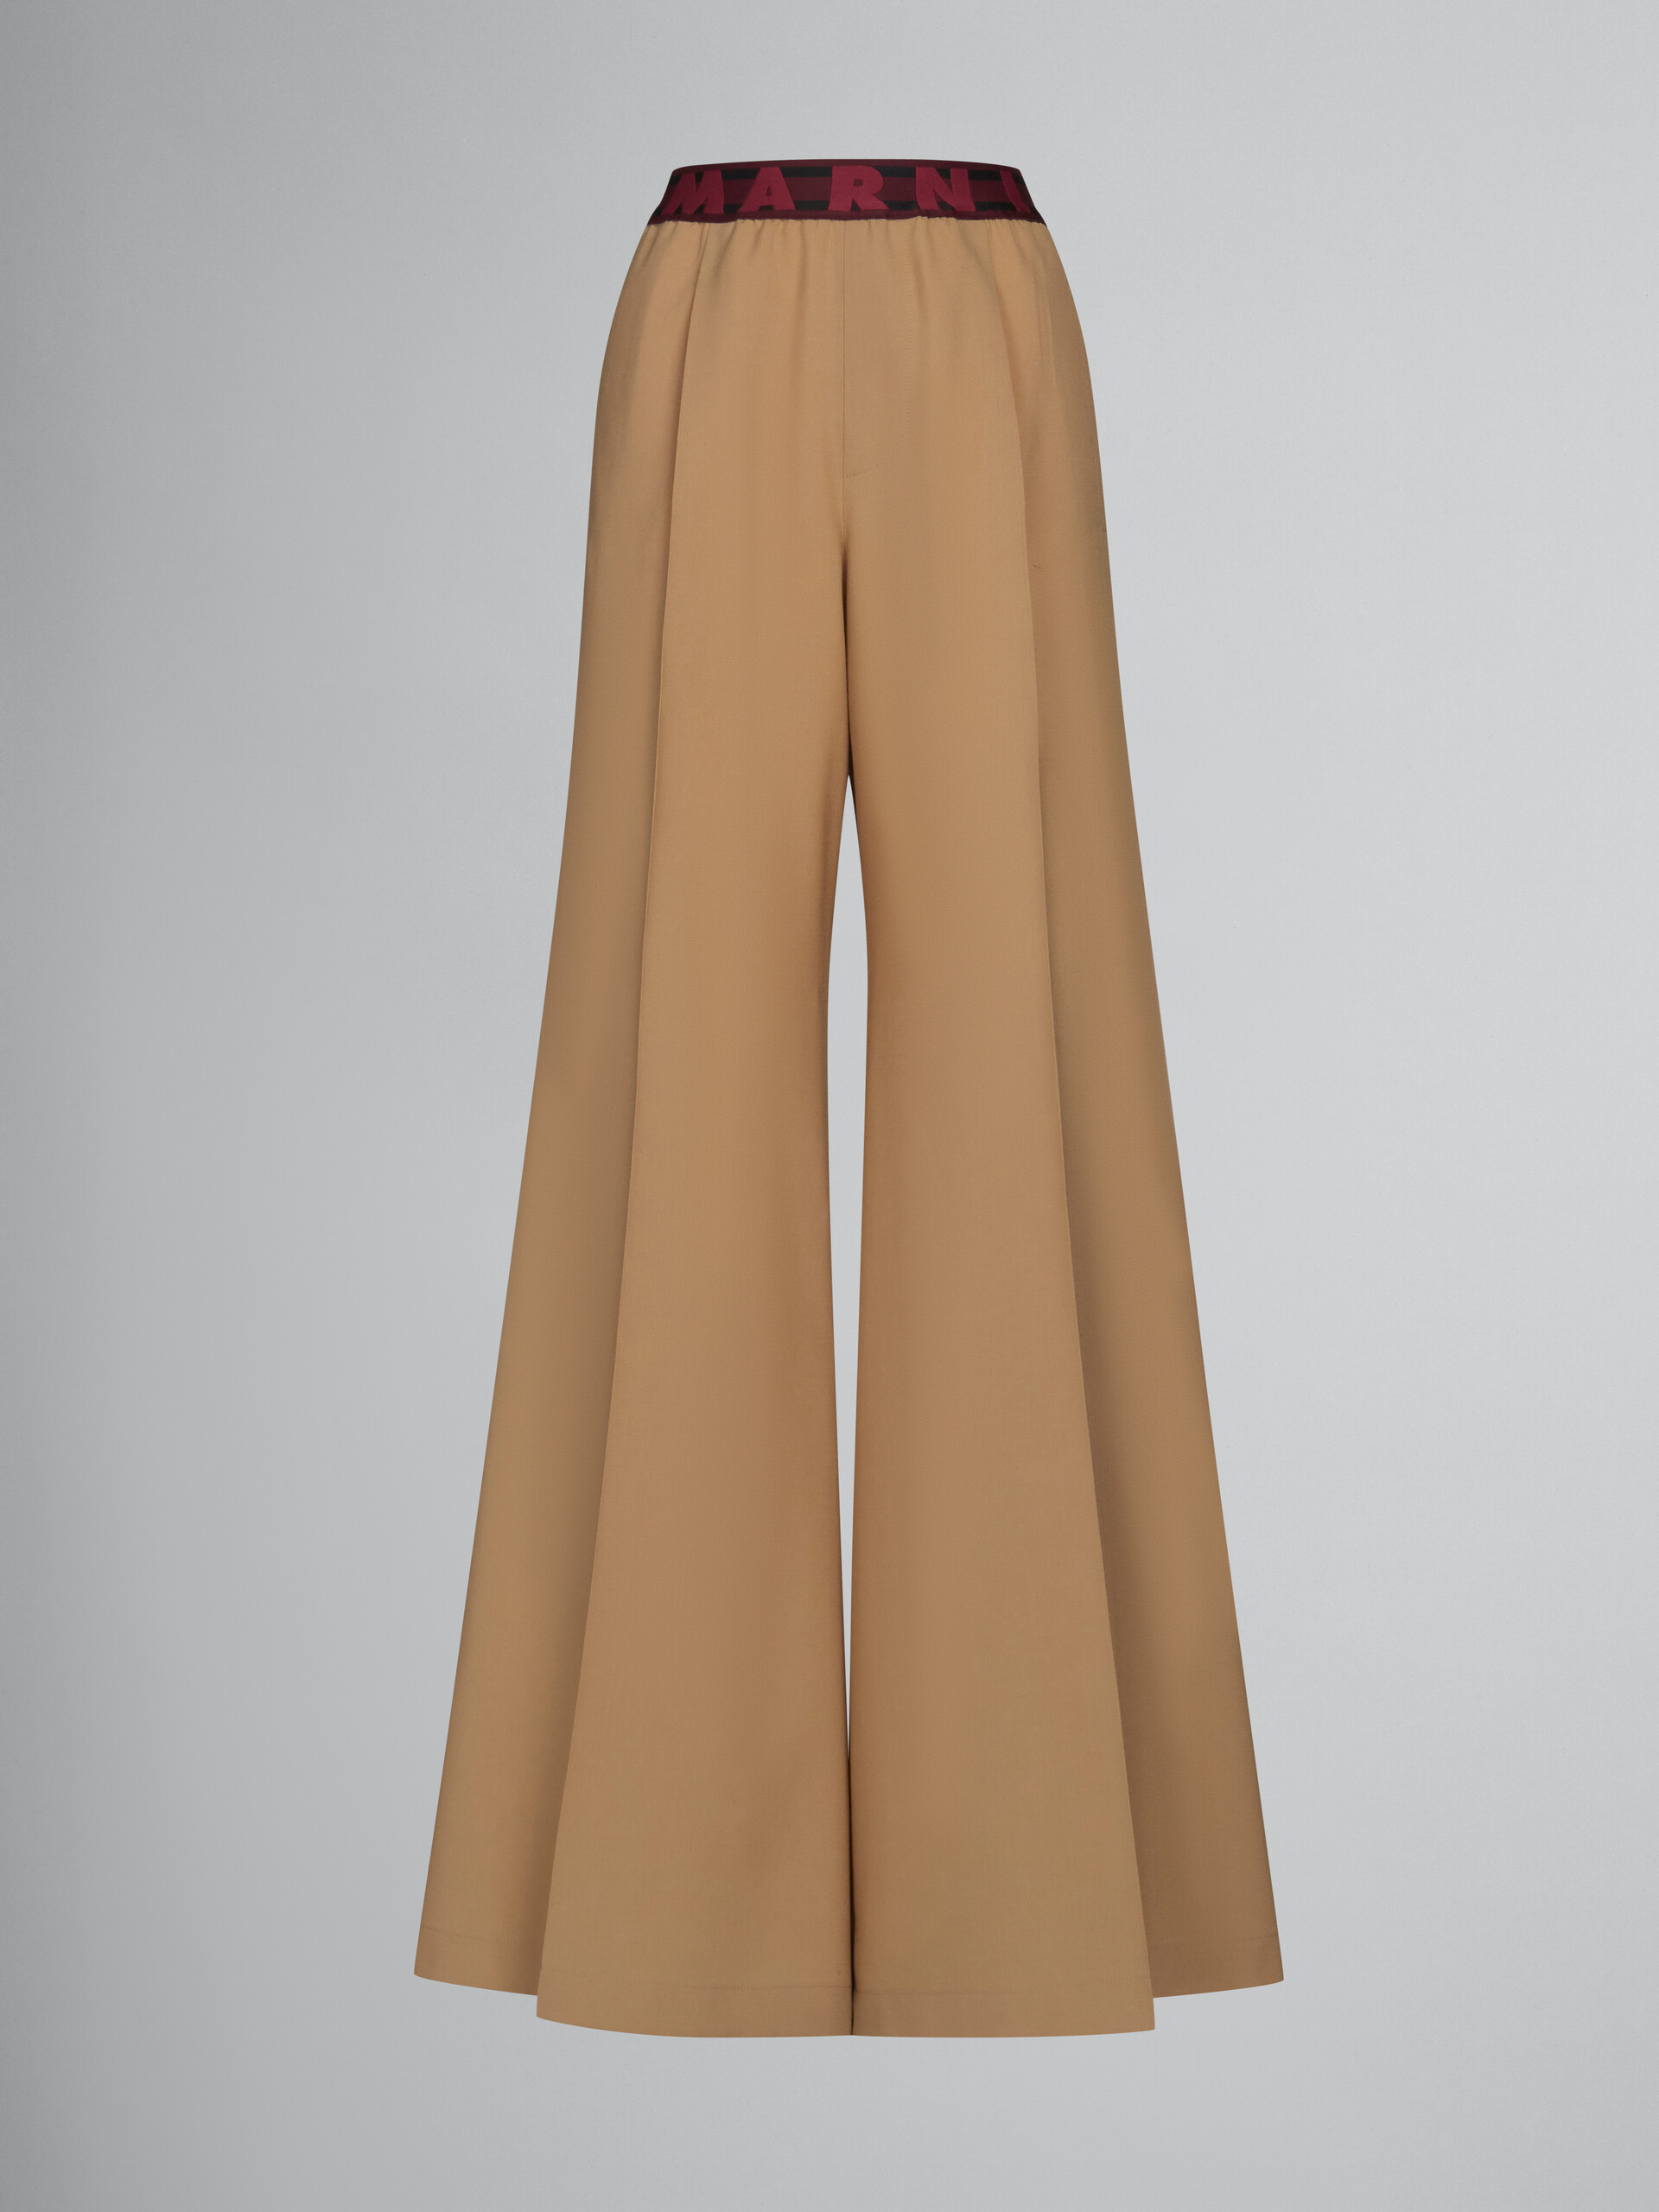 Pantalon évasé en laine beige avec logo à la taille - Pantalons - Image 1